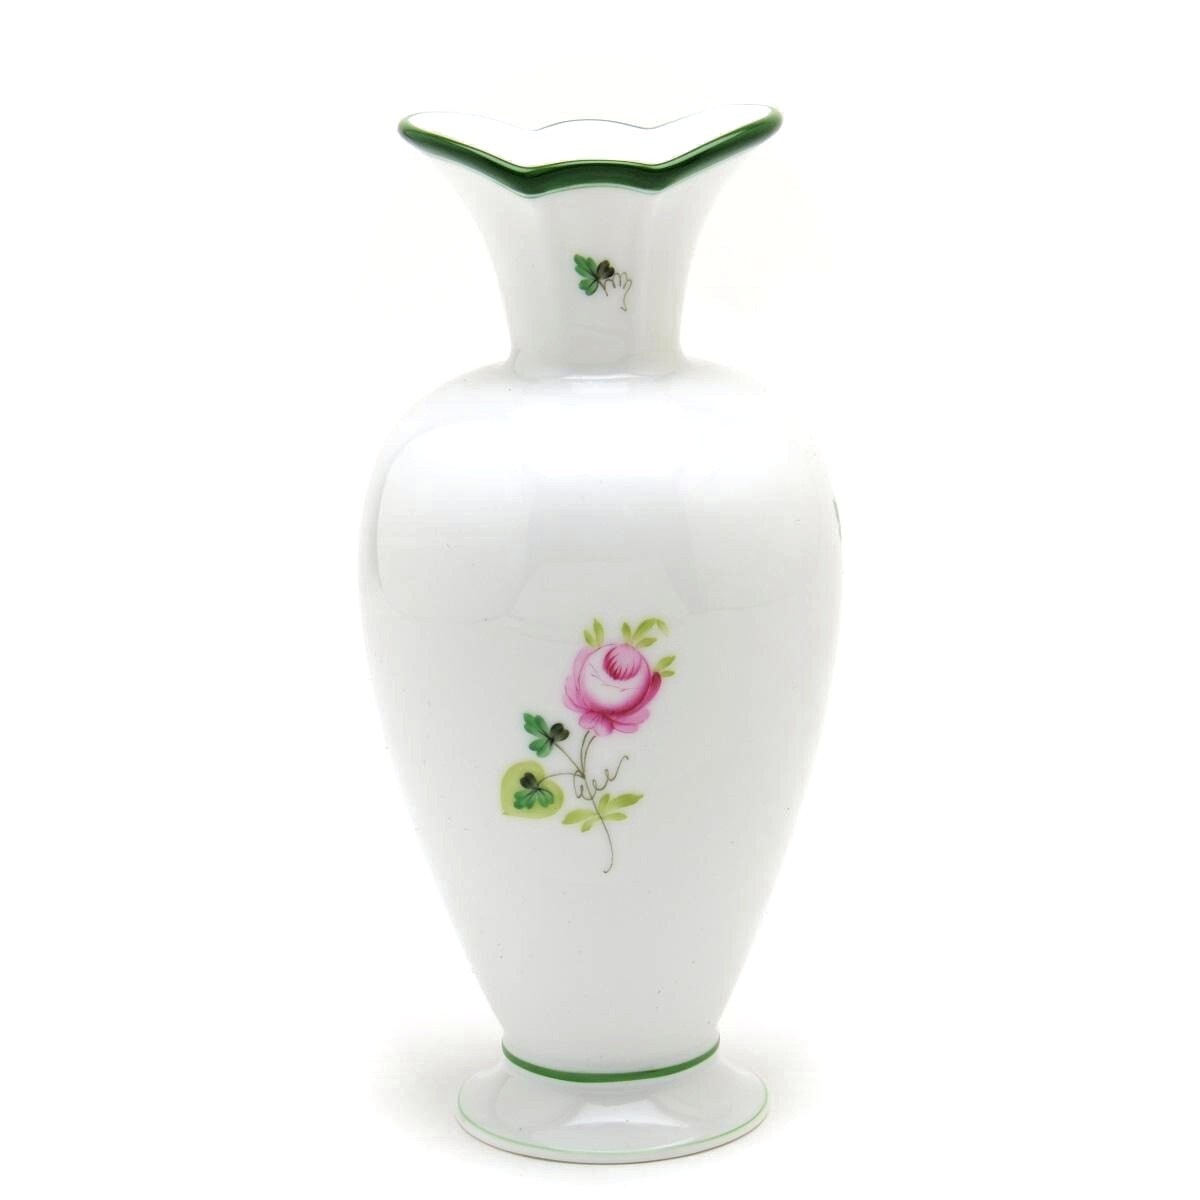 Herend Vienna Rose Vase (07053) Jarrón decorativo de porcelana pintado a mano, adorno de florero hecho en Hungría Nuevo Herend, muebles, interior, Accesorios de interior, florero